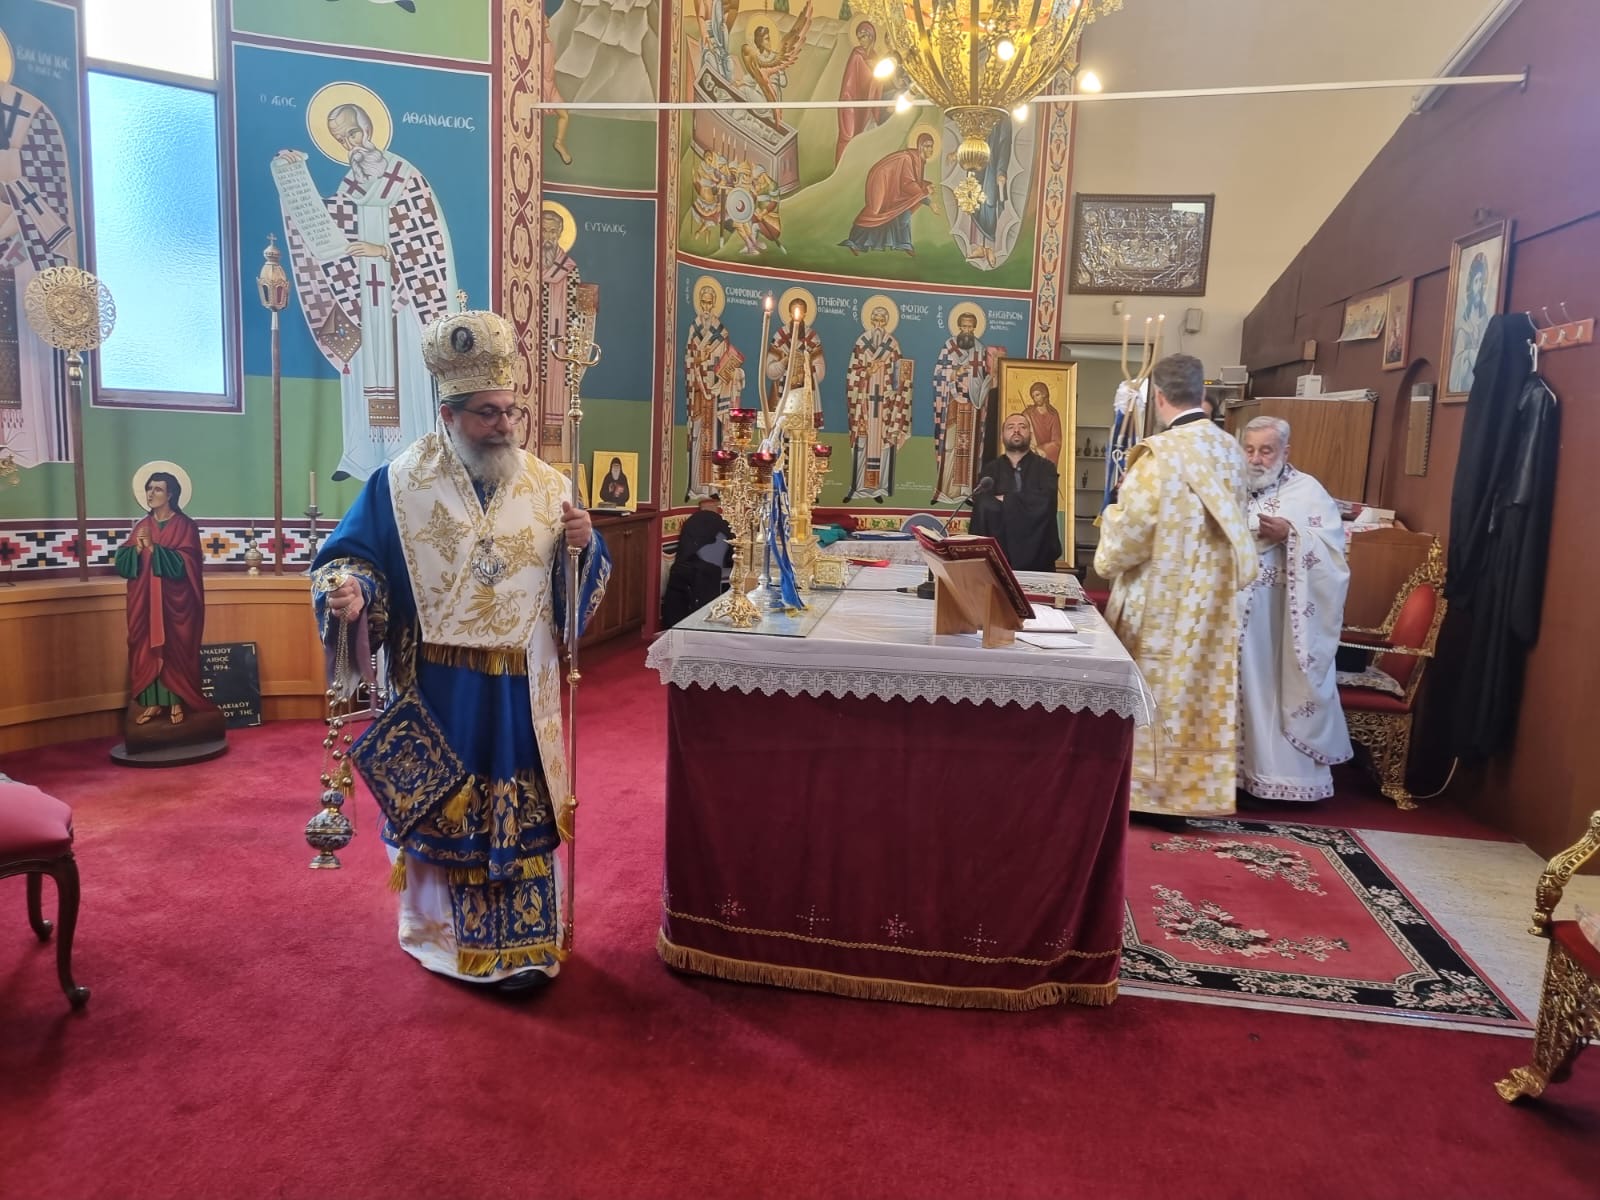 Ο Επίσκοπος Σωζοπόλεως στην Ενορία Αγίου Αθανασίου στο Springvale της Μελβούρνης